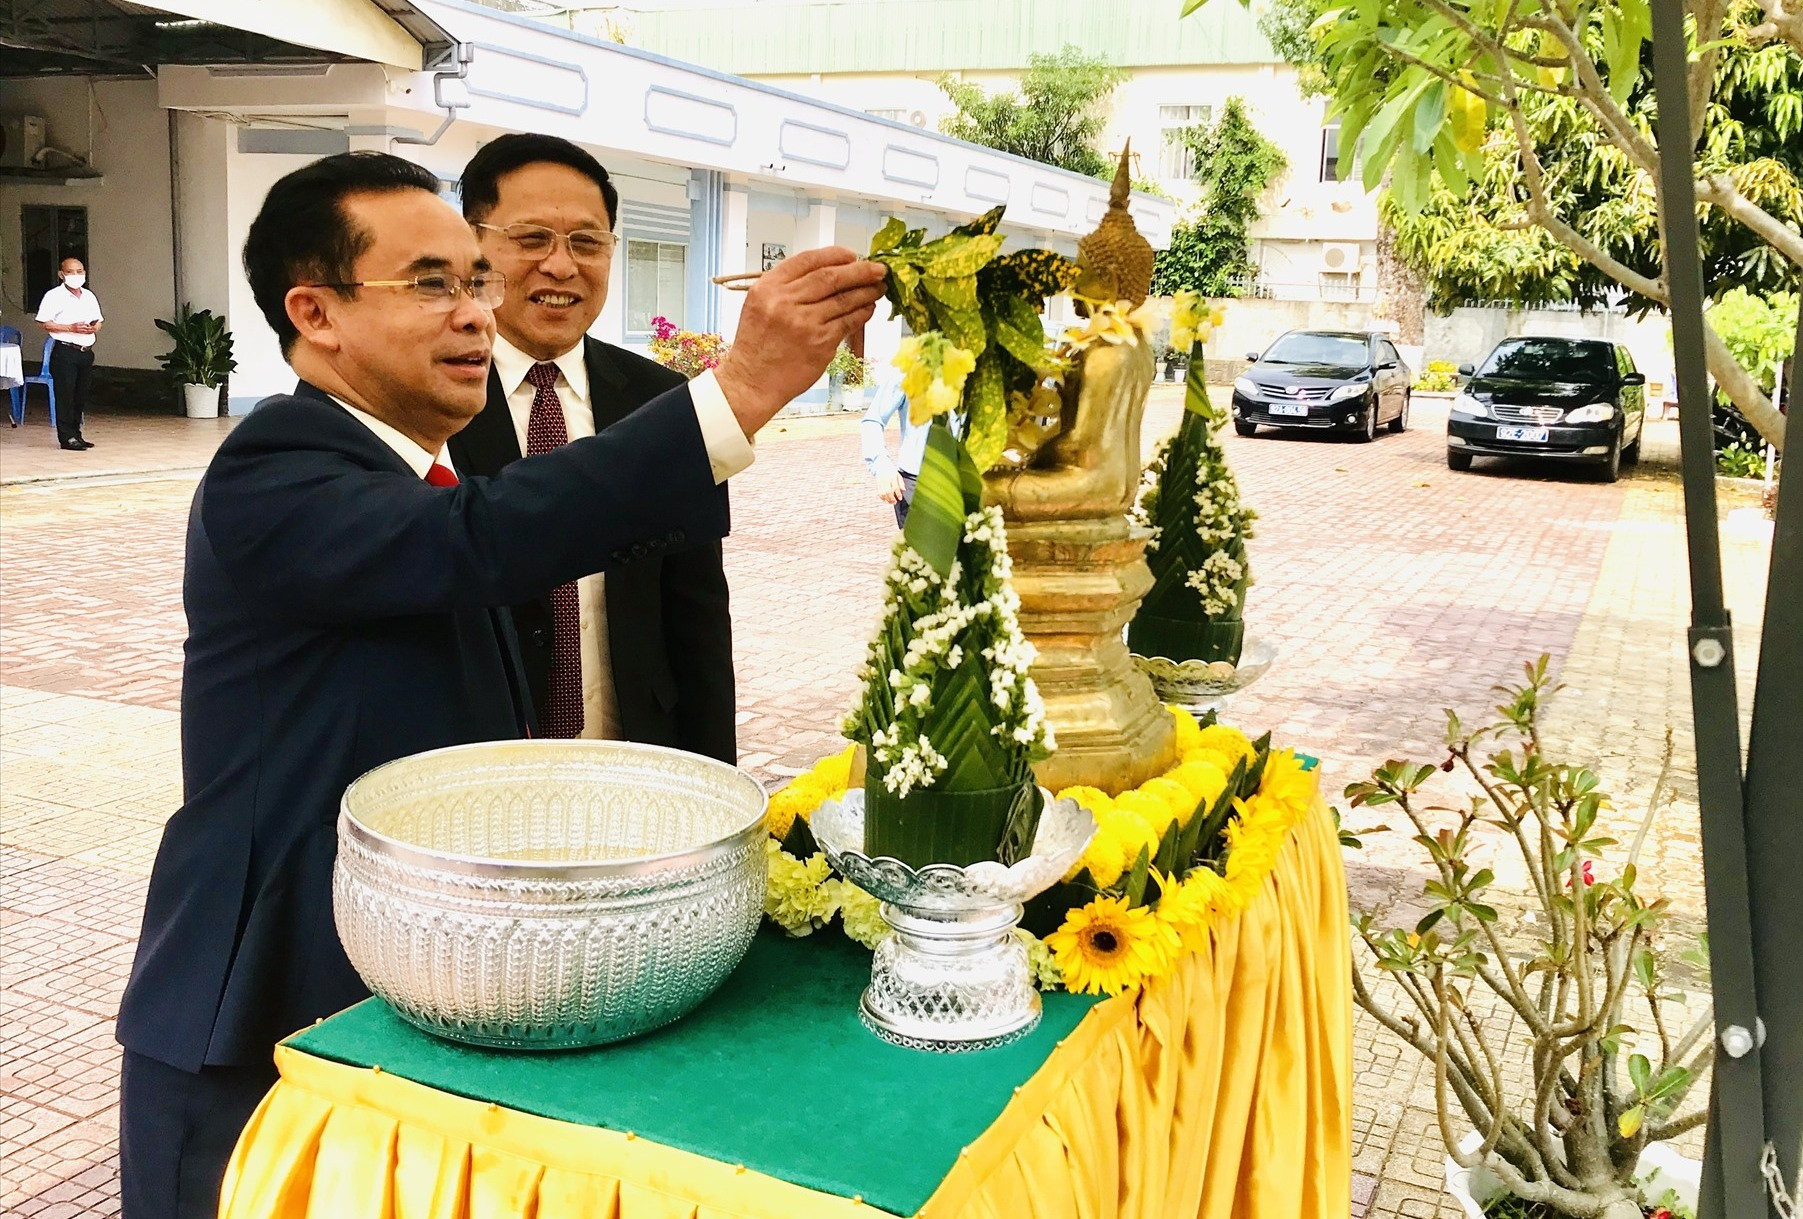 Phó Chủ tịch UBND tỉnh Trần Anh Tuấn thực hiện nghi thức tắm Phật truyền thống nhân dịp Tết cổ truyền Bunpimay (Lào). Ảnh: Q.T